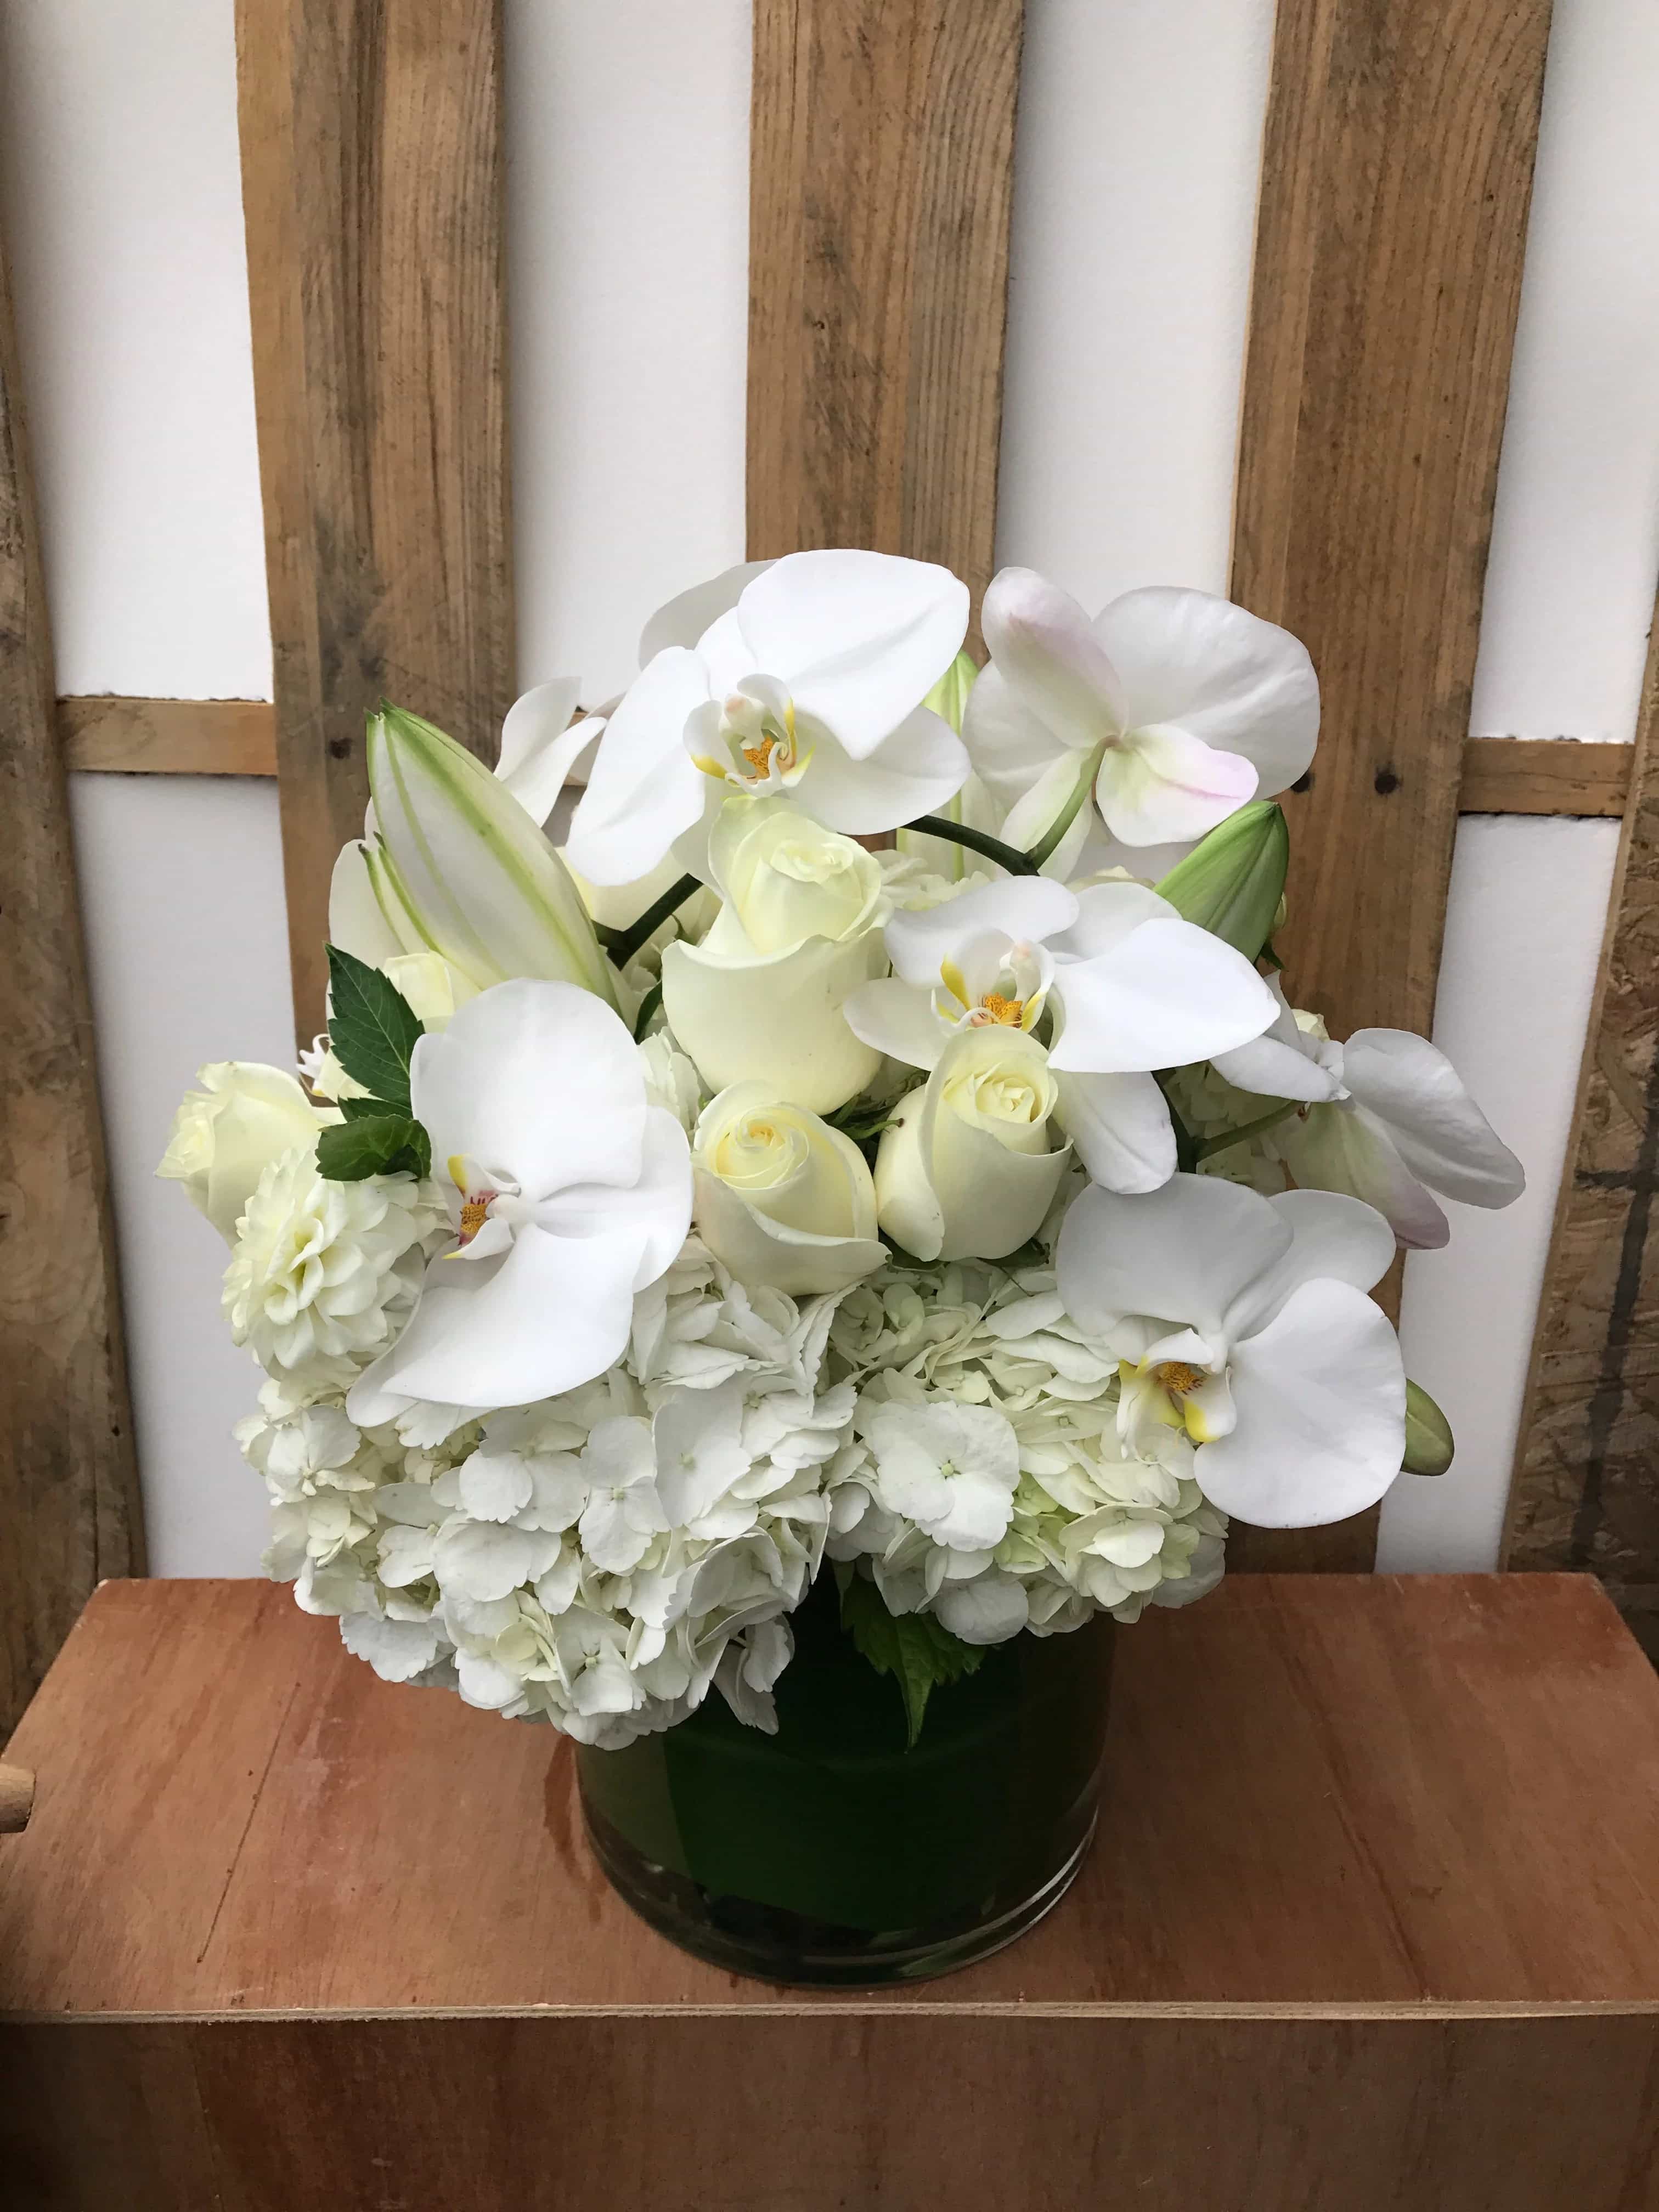 Westlake Village Garden Florist, US, popular wedding flowers